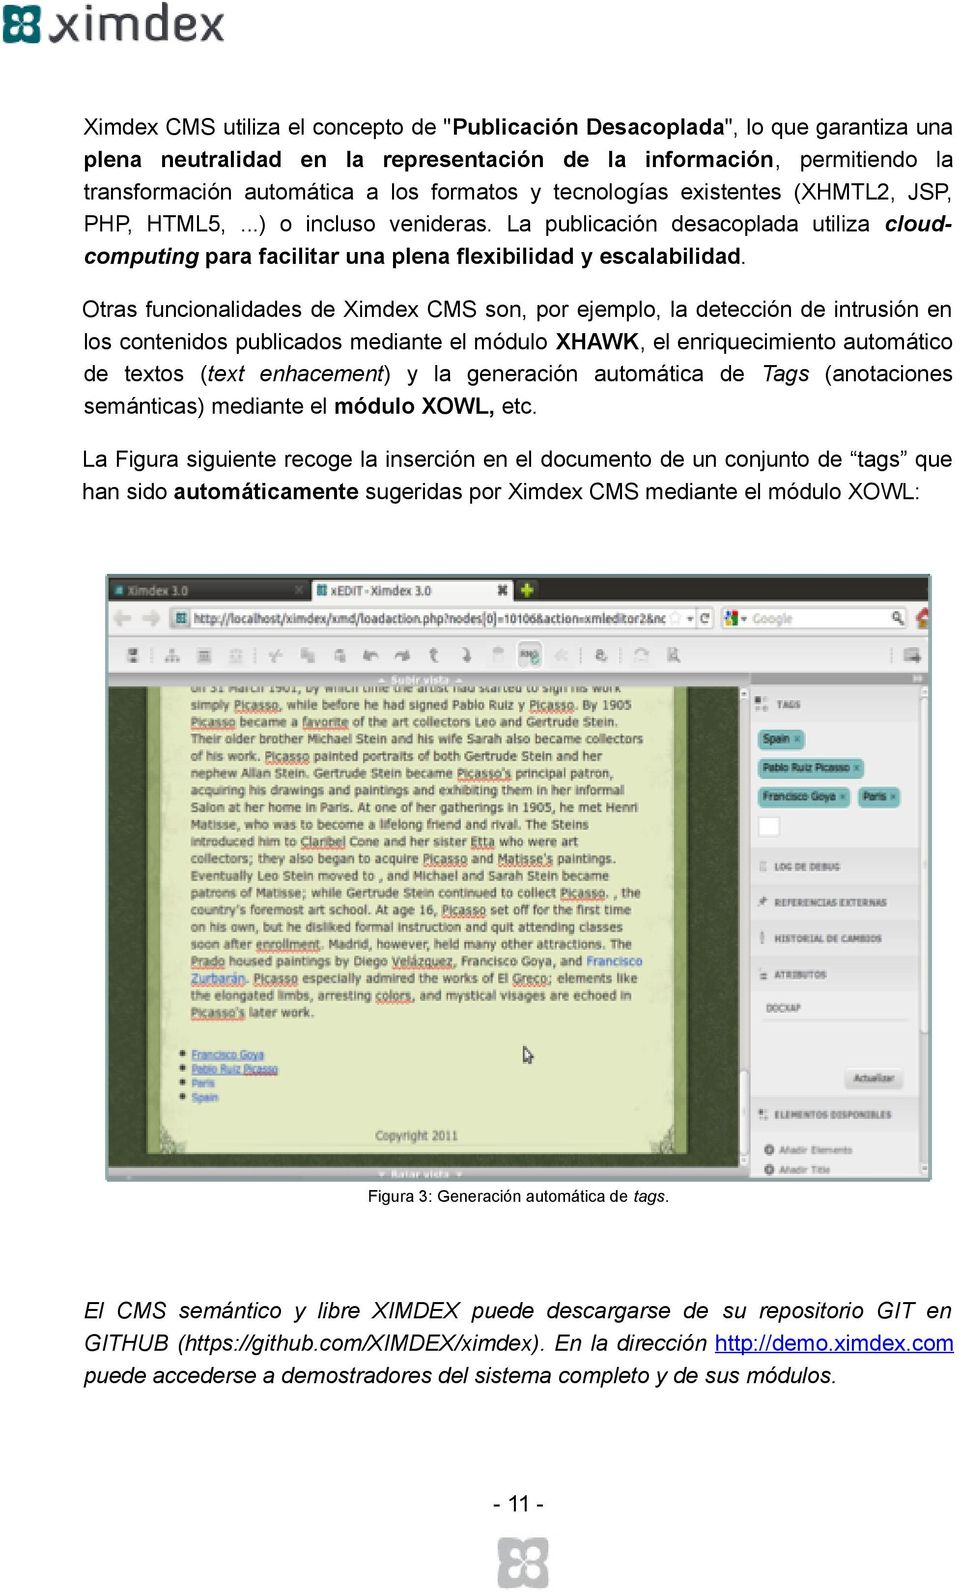 Otras funcionalidades de Ximdex CMS son, por ejemplo, la detección de intrusión en los contenidos publicados mediante el módulo XHAWK, el enriquecimiento automático de textos (text enhacement) y la